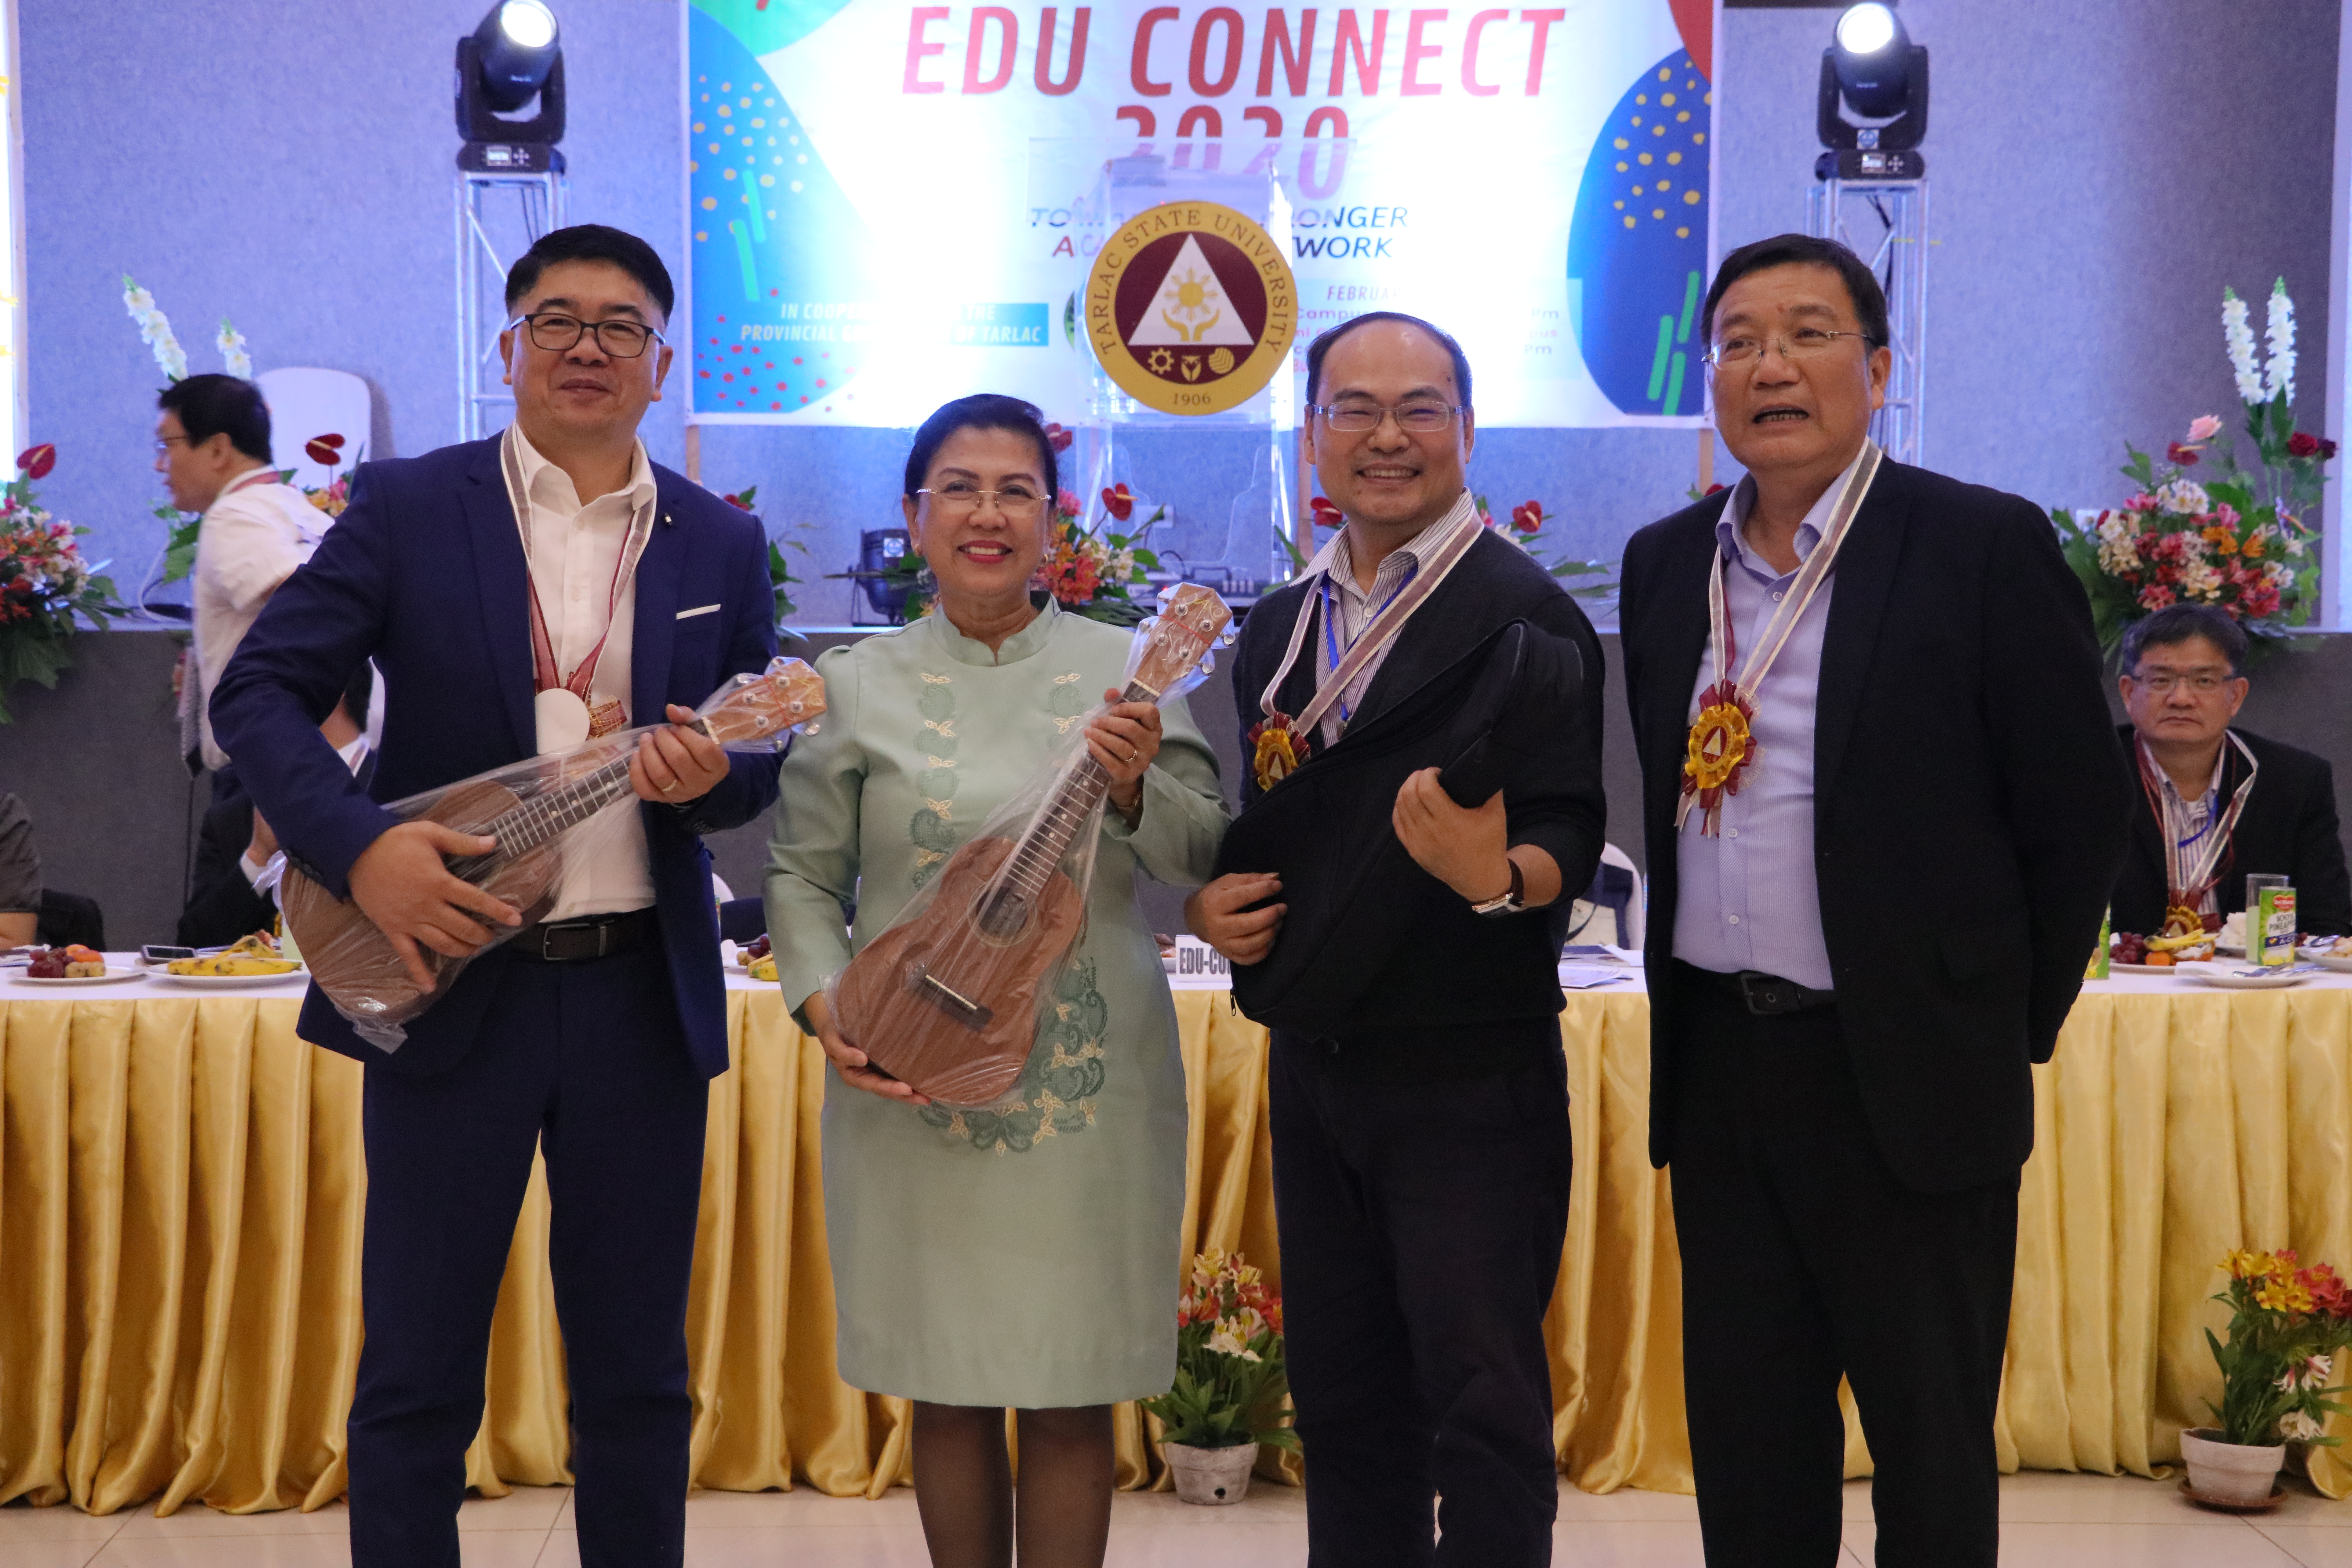 Educ Connect 2020